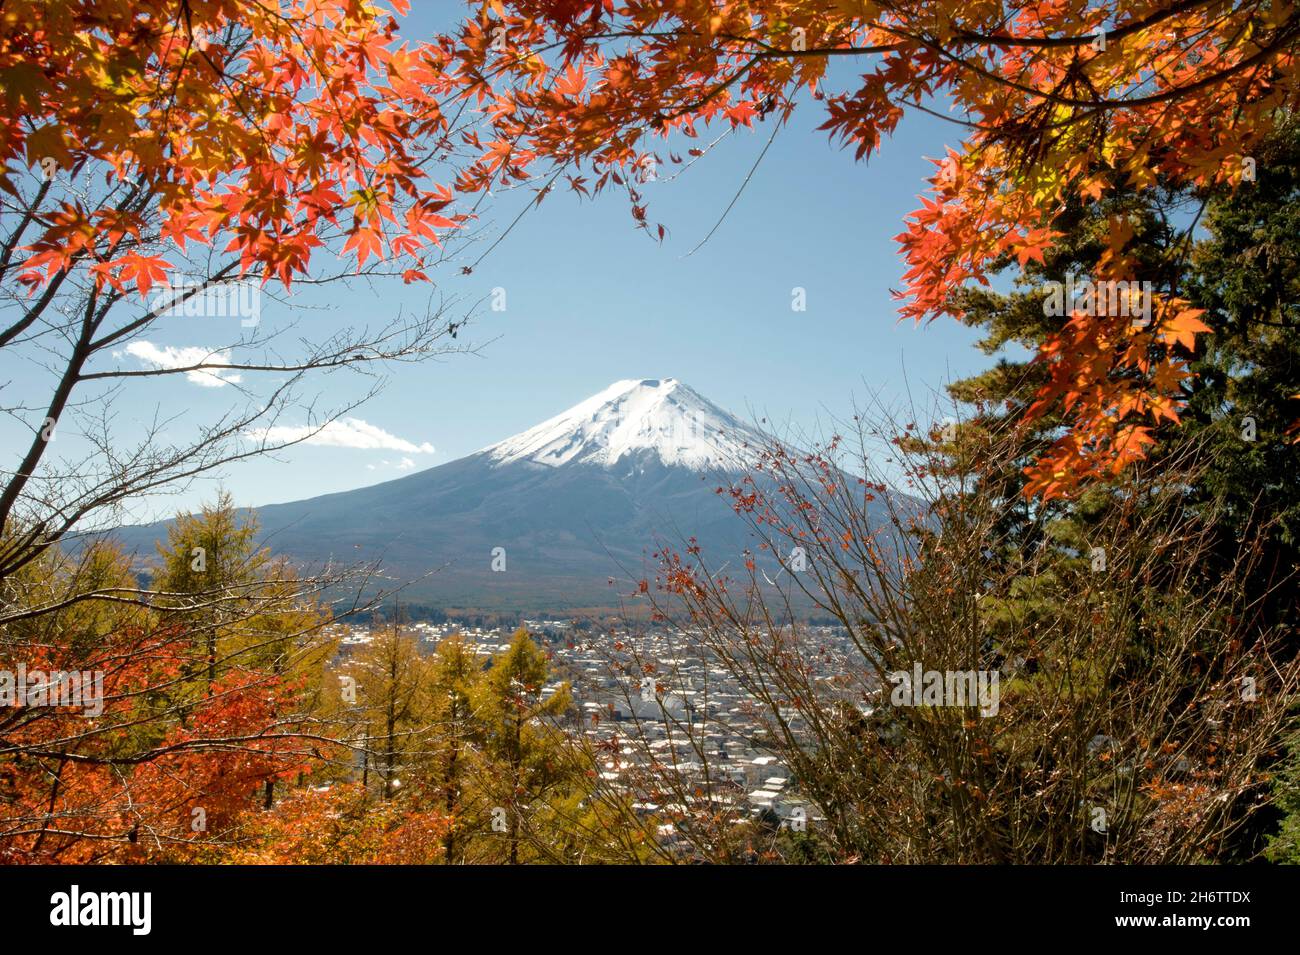 Der schneebedeckte Gipfel des Fuji, der durch den Herbst gesehen wird, verlässt Shimoyoshida in der Präfektur Yamanashi, Japan. Stockfoto